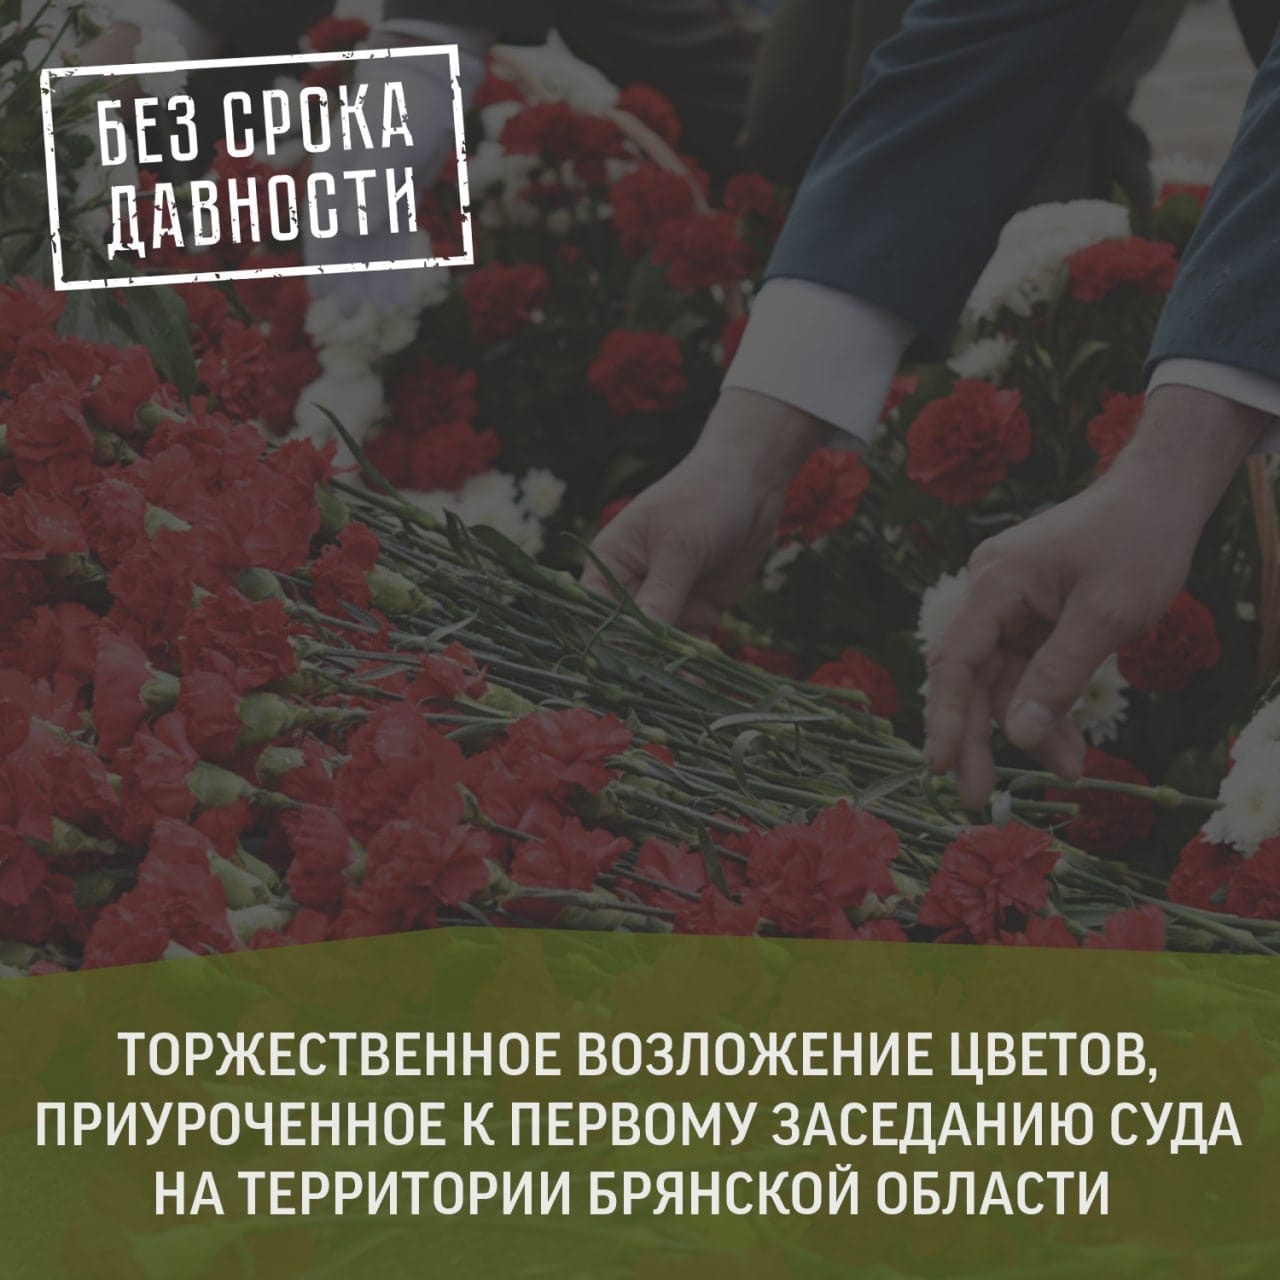 В Брянской области началось возложение цветов в память о жертвах геноцида советских граждан